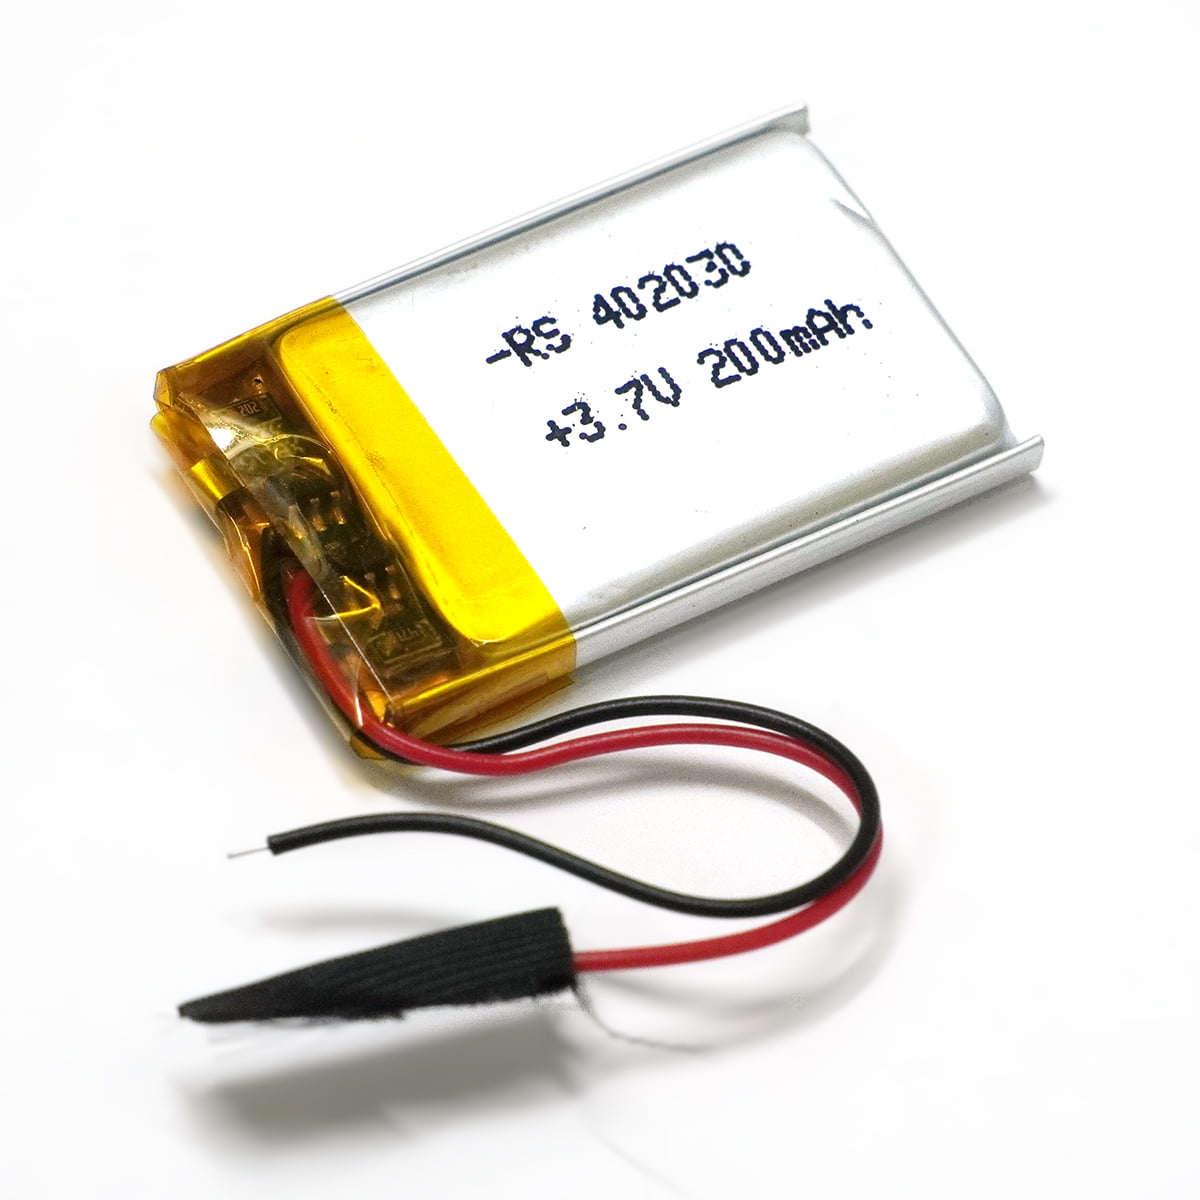 リポバッテリー 402030 200mah 3.7v 充電式 リチウムポリマー 電池 リポ バッテリー Lipo